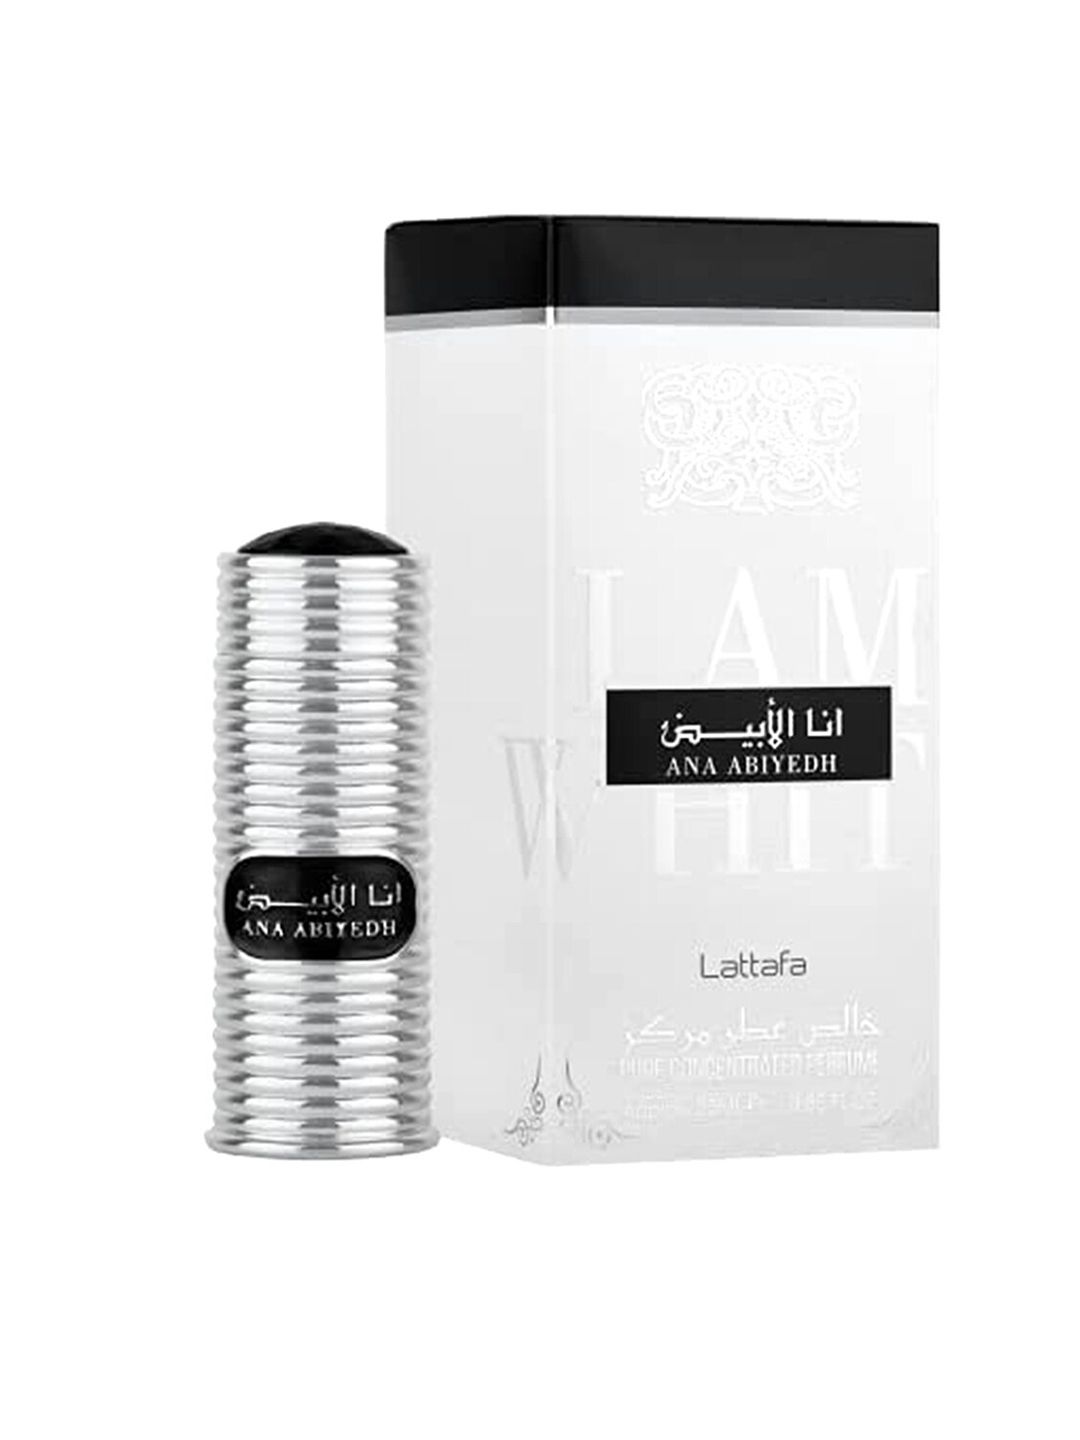 Lattafa Grey Ana Abiyedh Imported Long Lasting Premium Eau De Parfum Attar 25 ml Price in India